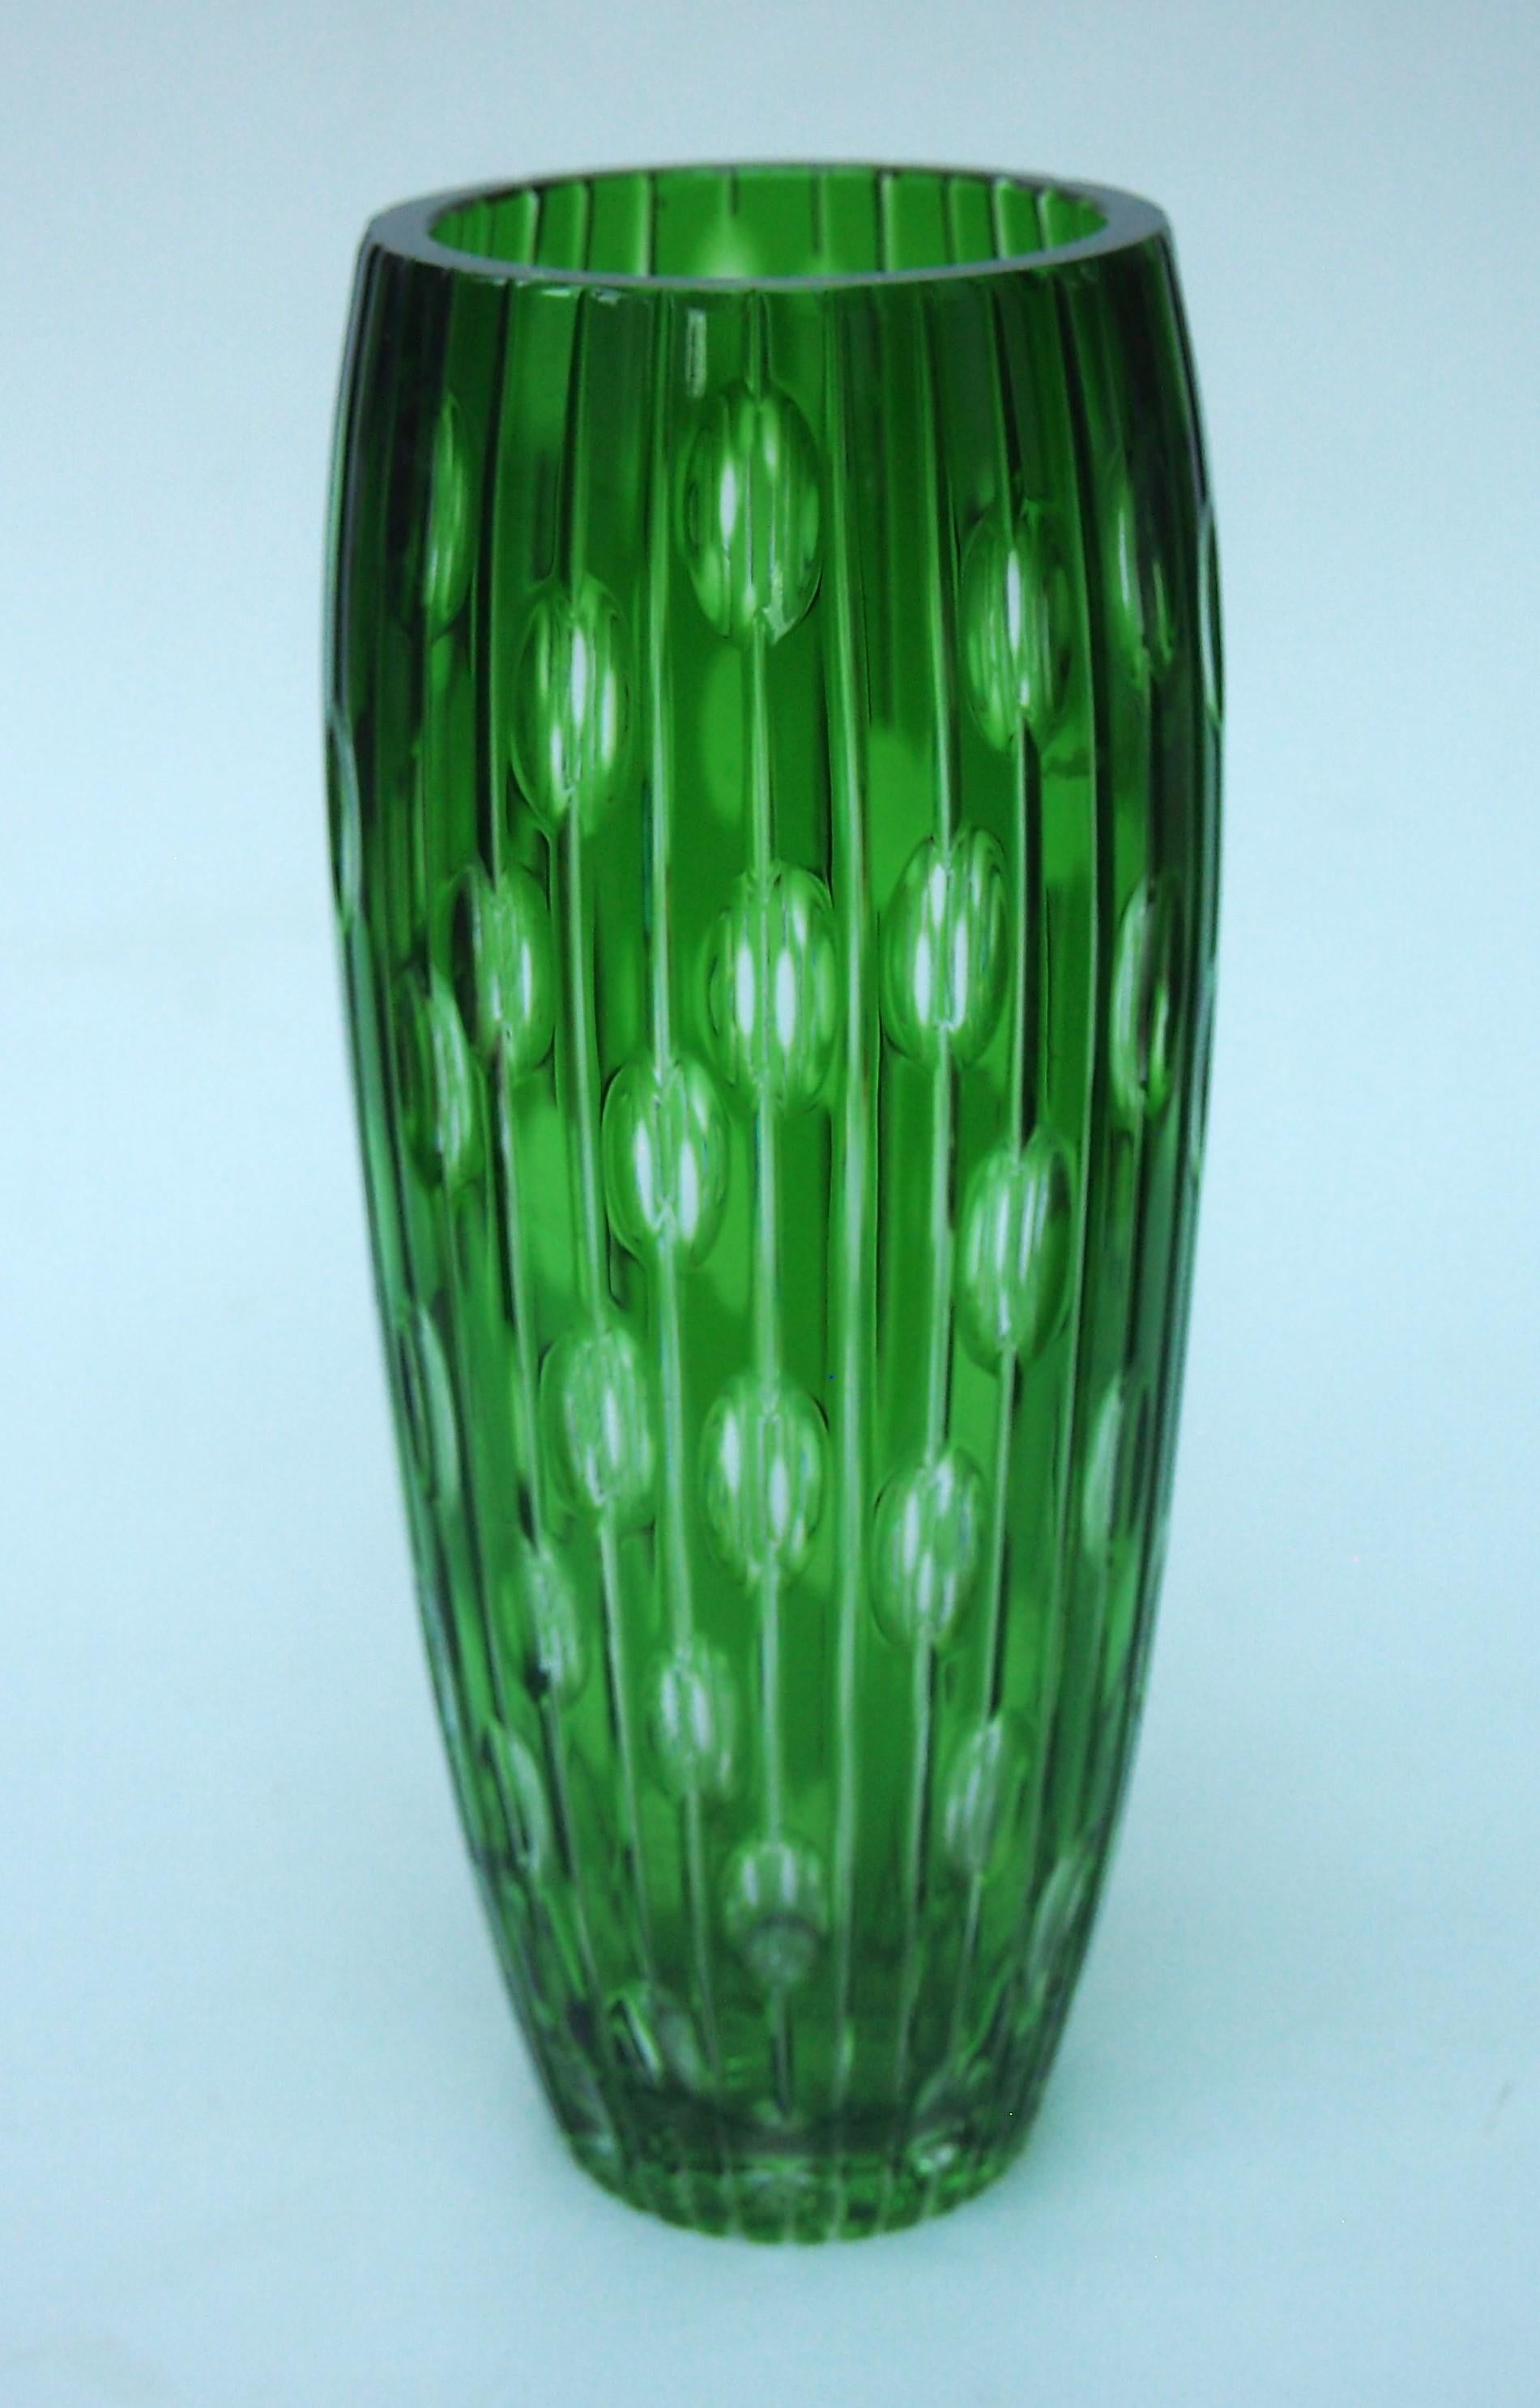 Fabuleux vase vert cristal, taillé en clair, à 1000 yeux, provenant de la région de Haida en Tchécoslovaquie - probablement de Carl Metzler ou Carl Hosch. Les vases à 1000 yeux sont appelés ainsi parce qu'en regardant dans chacune des douzaines